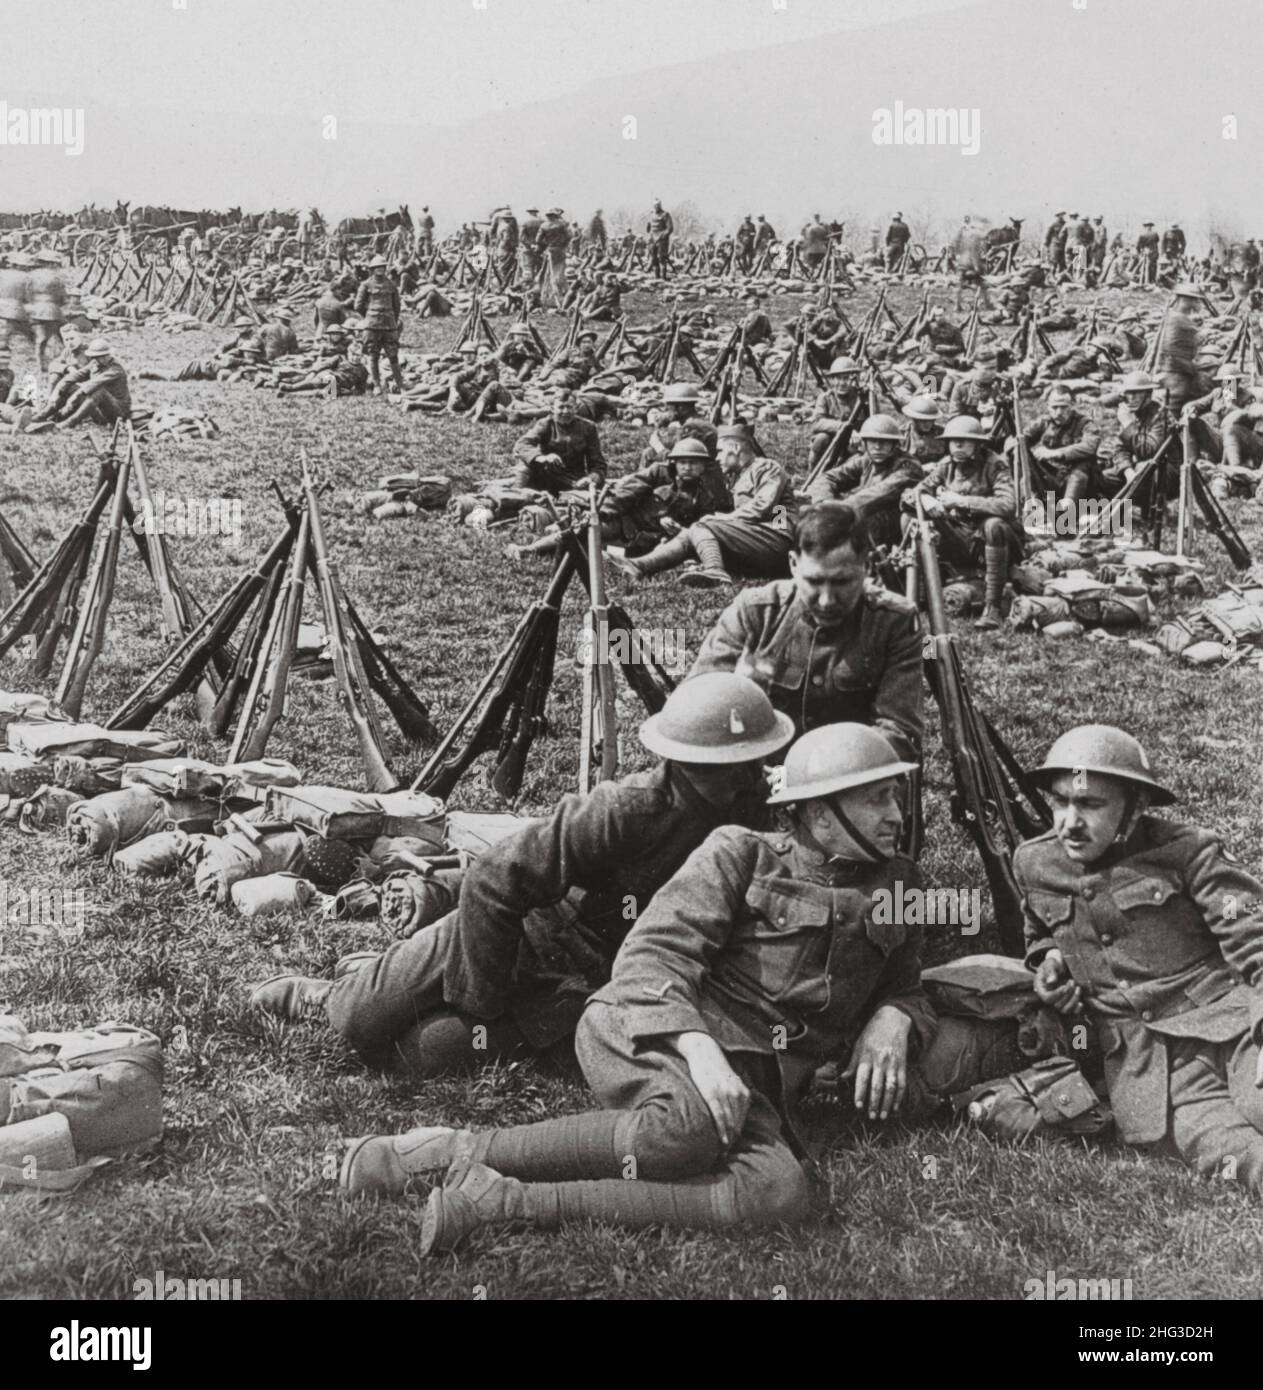 Foto de archivo de la Primera Guerra Mundial Doughboys de la división 89th descansando antes de la revisión, Treves, Alemania. 1917-1918 Foto de stock